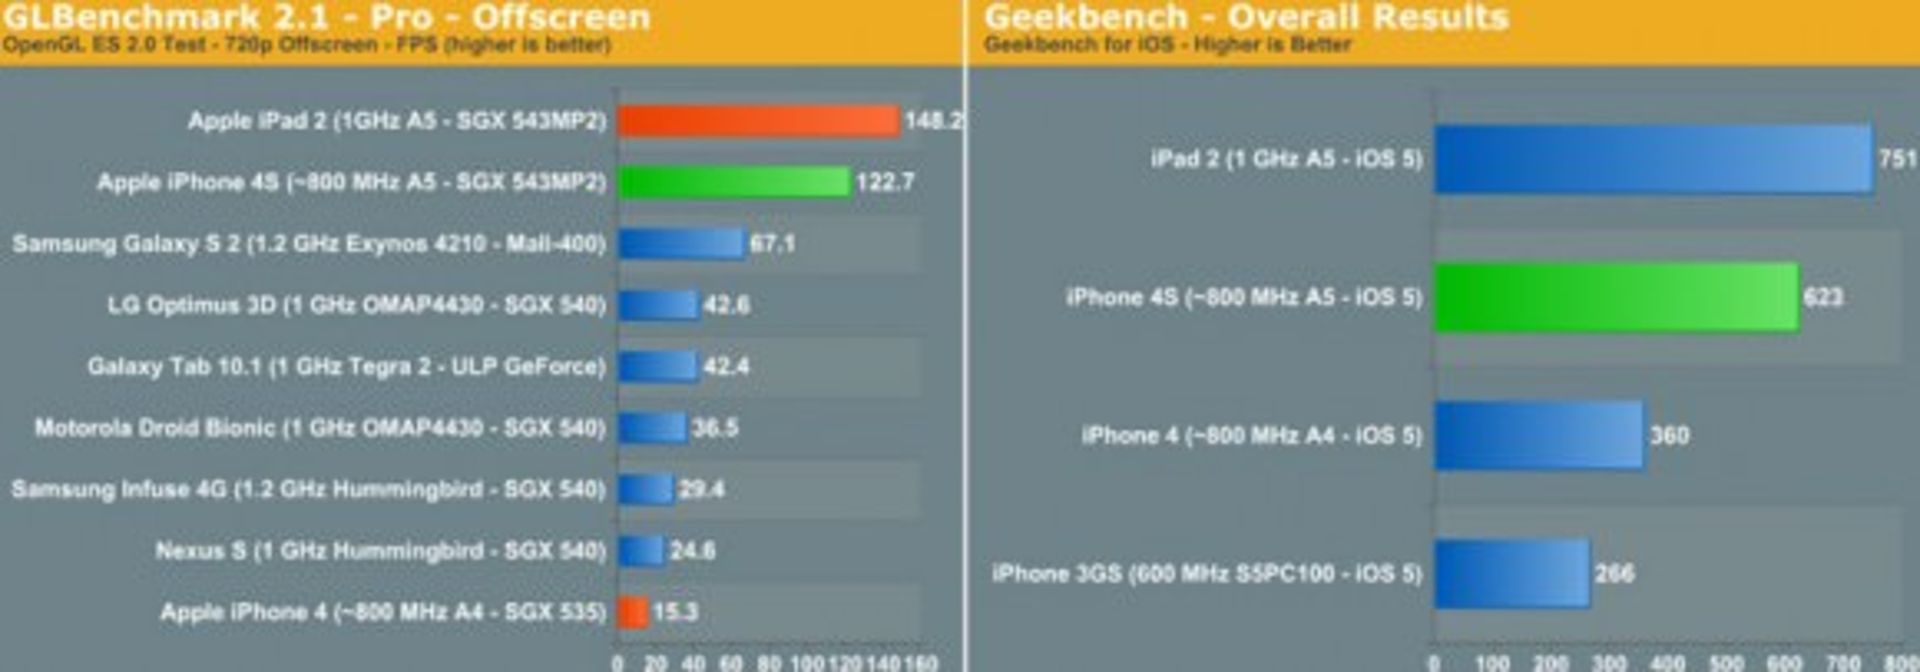 iPhone 4S benchmark